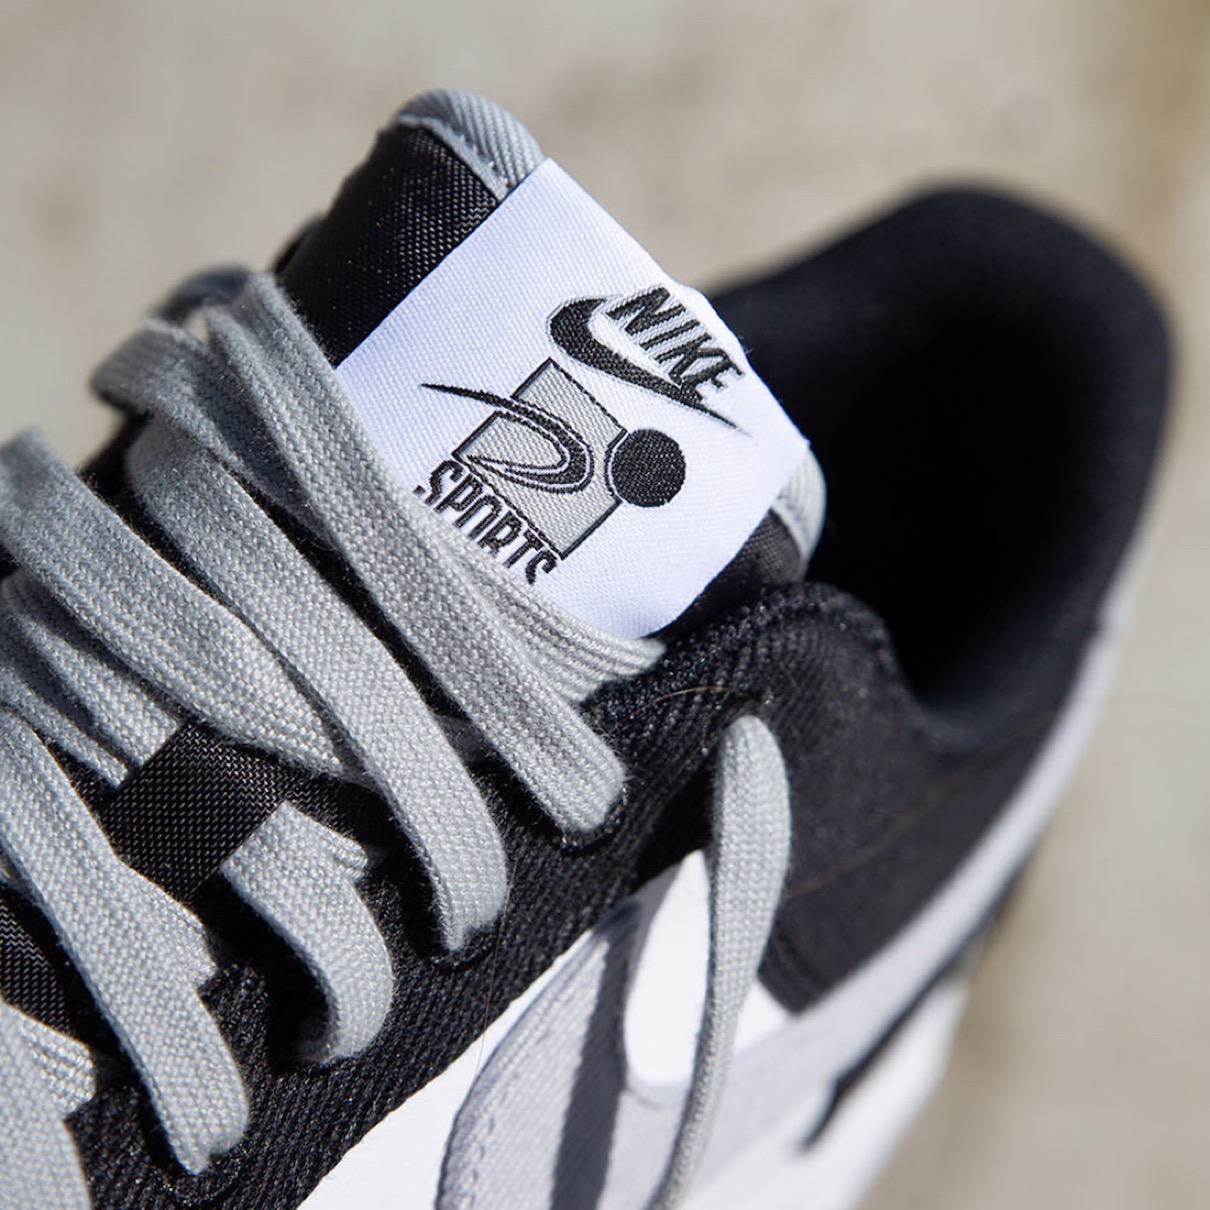 Nike】Air Force 1 '07 LV8 EMB “Kings”が国内4月29日に発売予定 | UP 